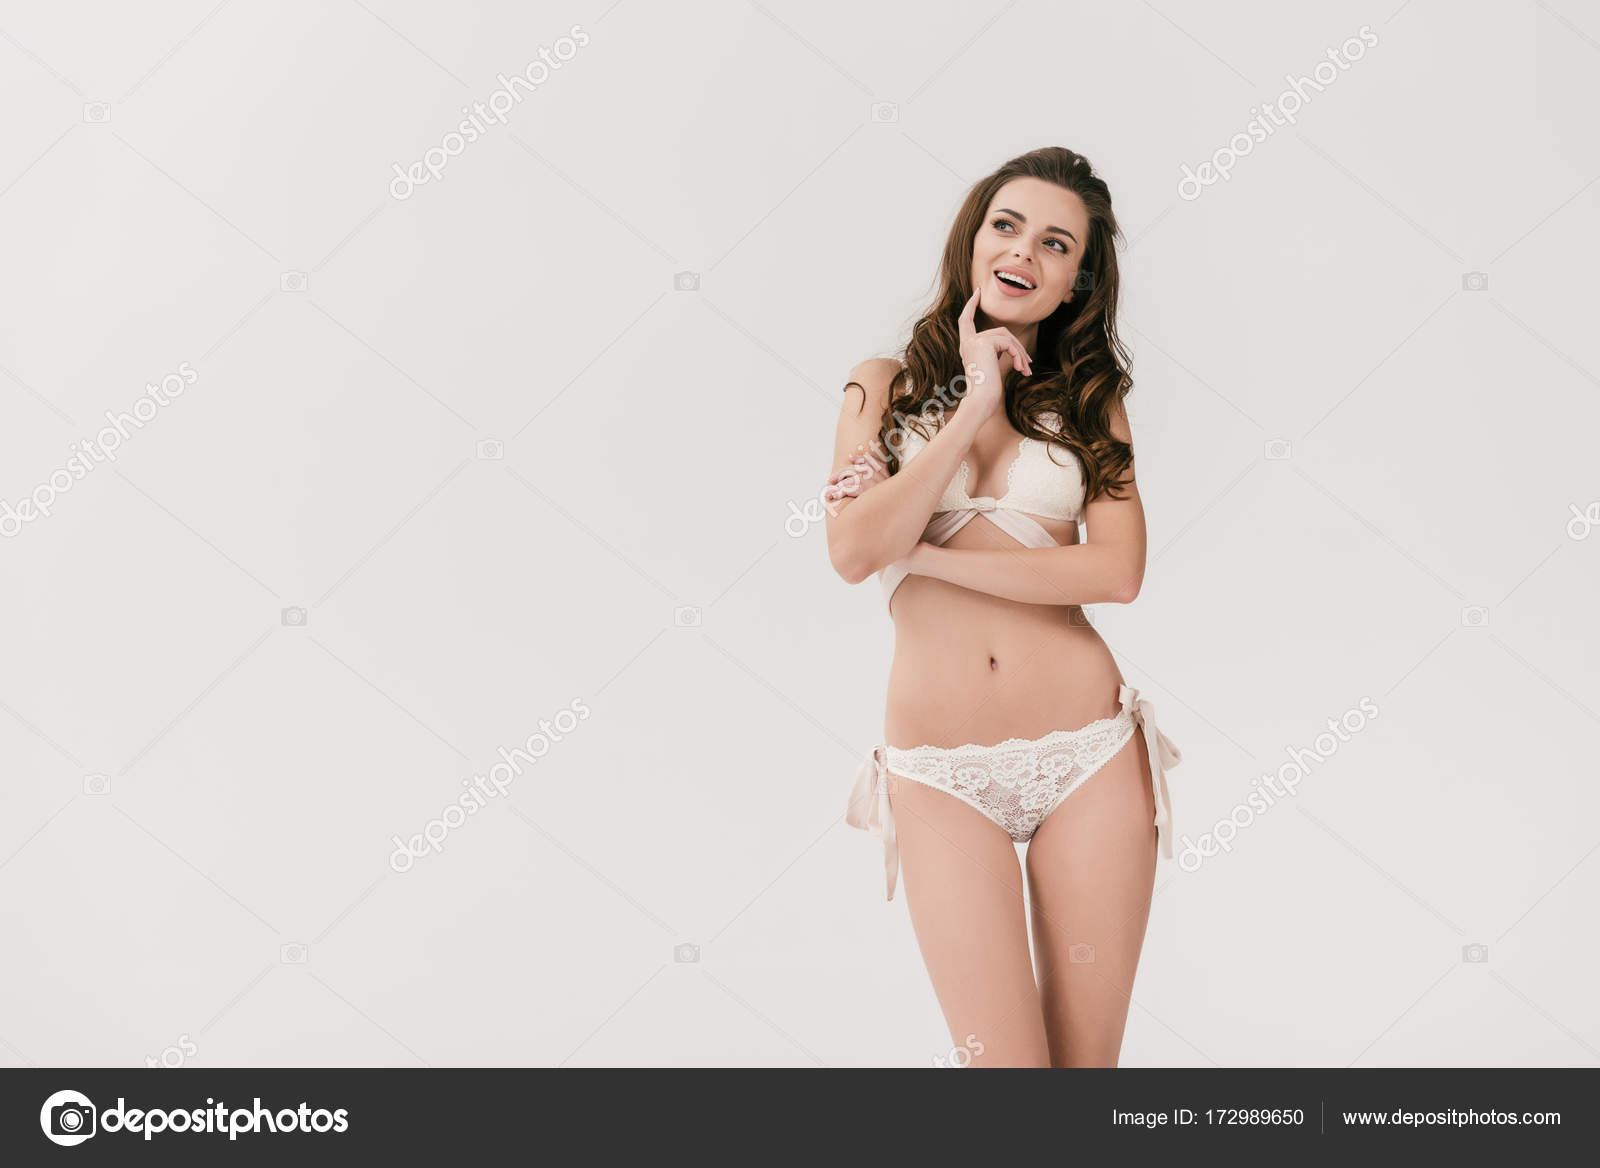 Sexy Girl In White Lingerie Stock Photo By Vitalikradko 172989650